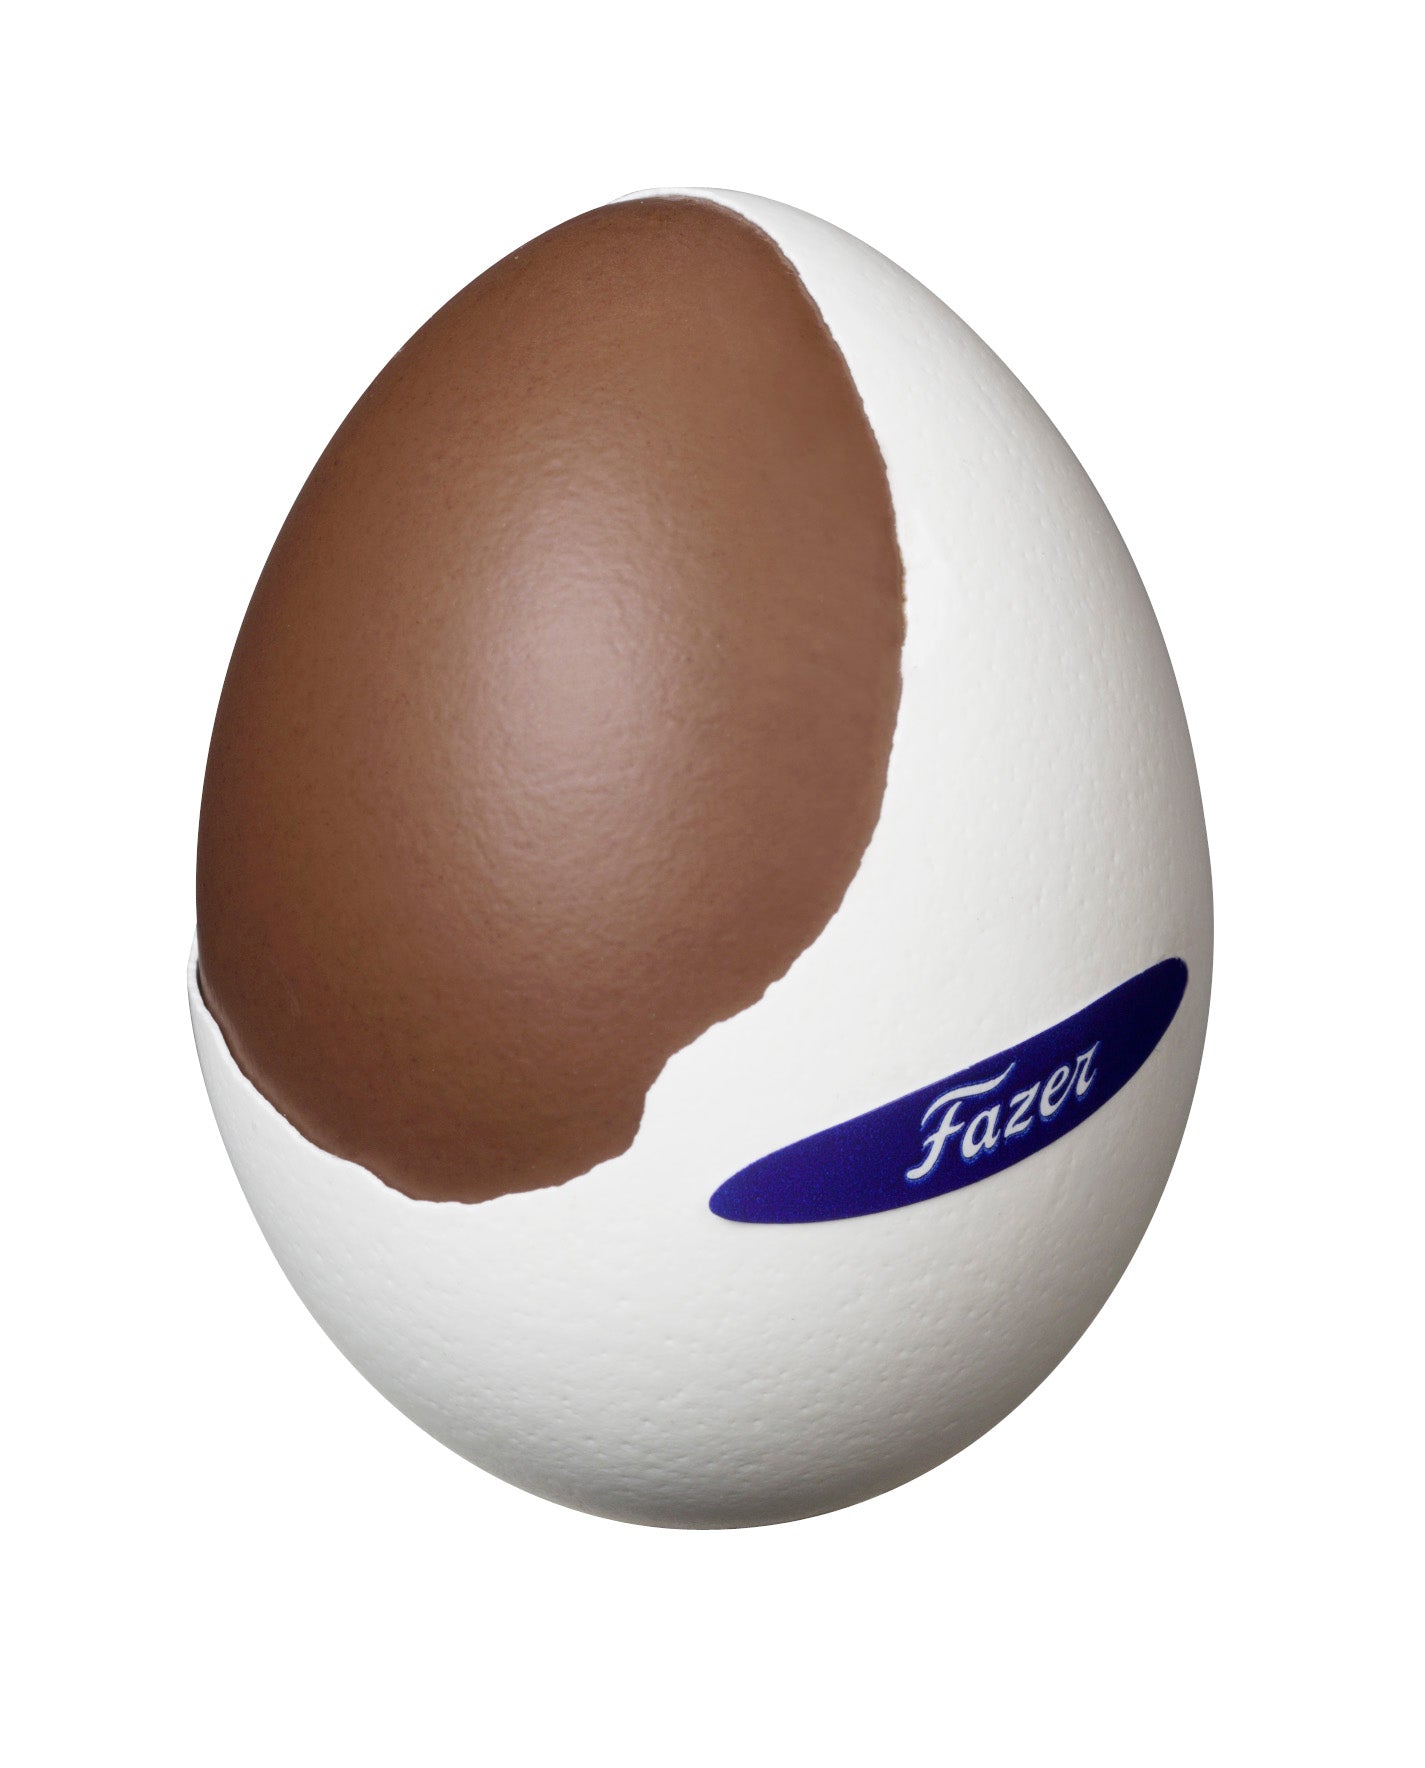 Mignon egg